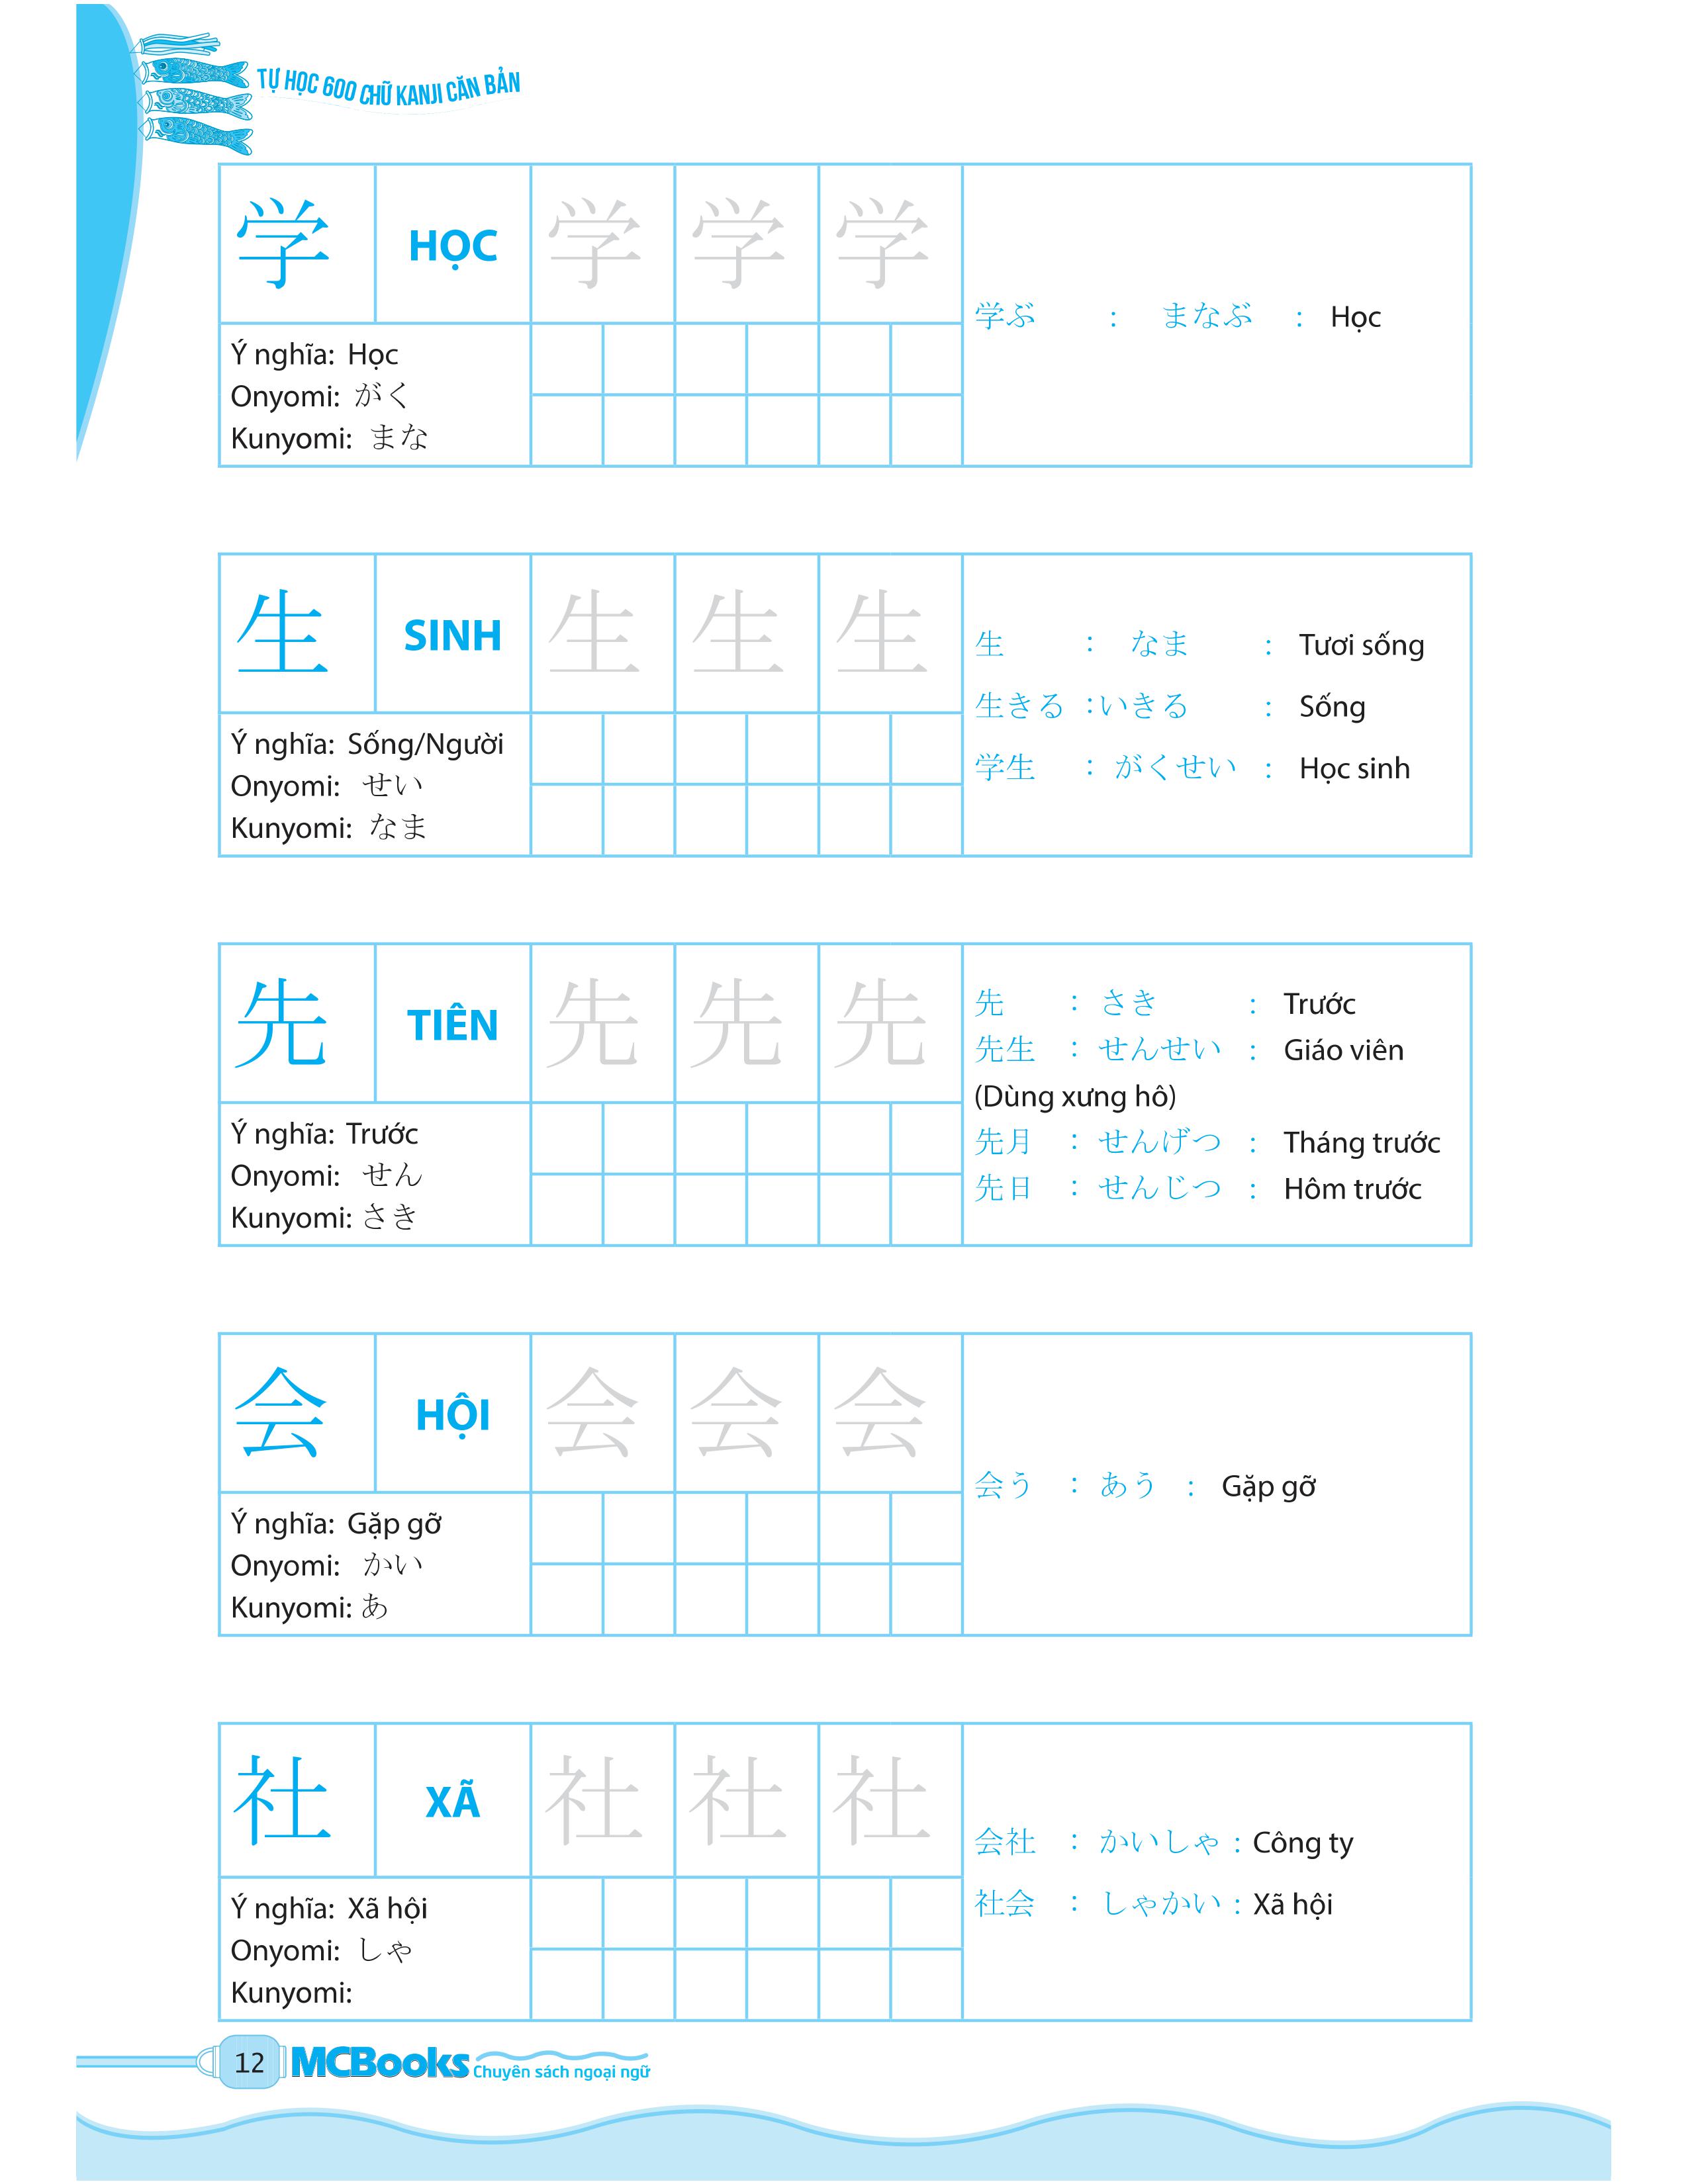 Tự Học 600 Chữ Kanji Căn Bản PDF